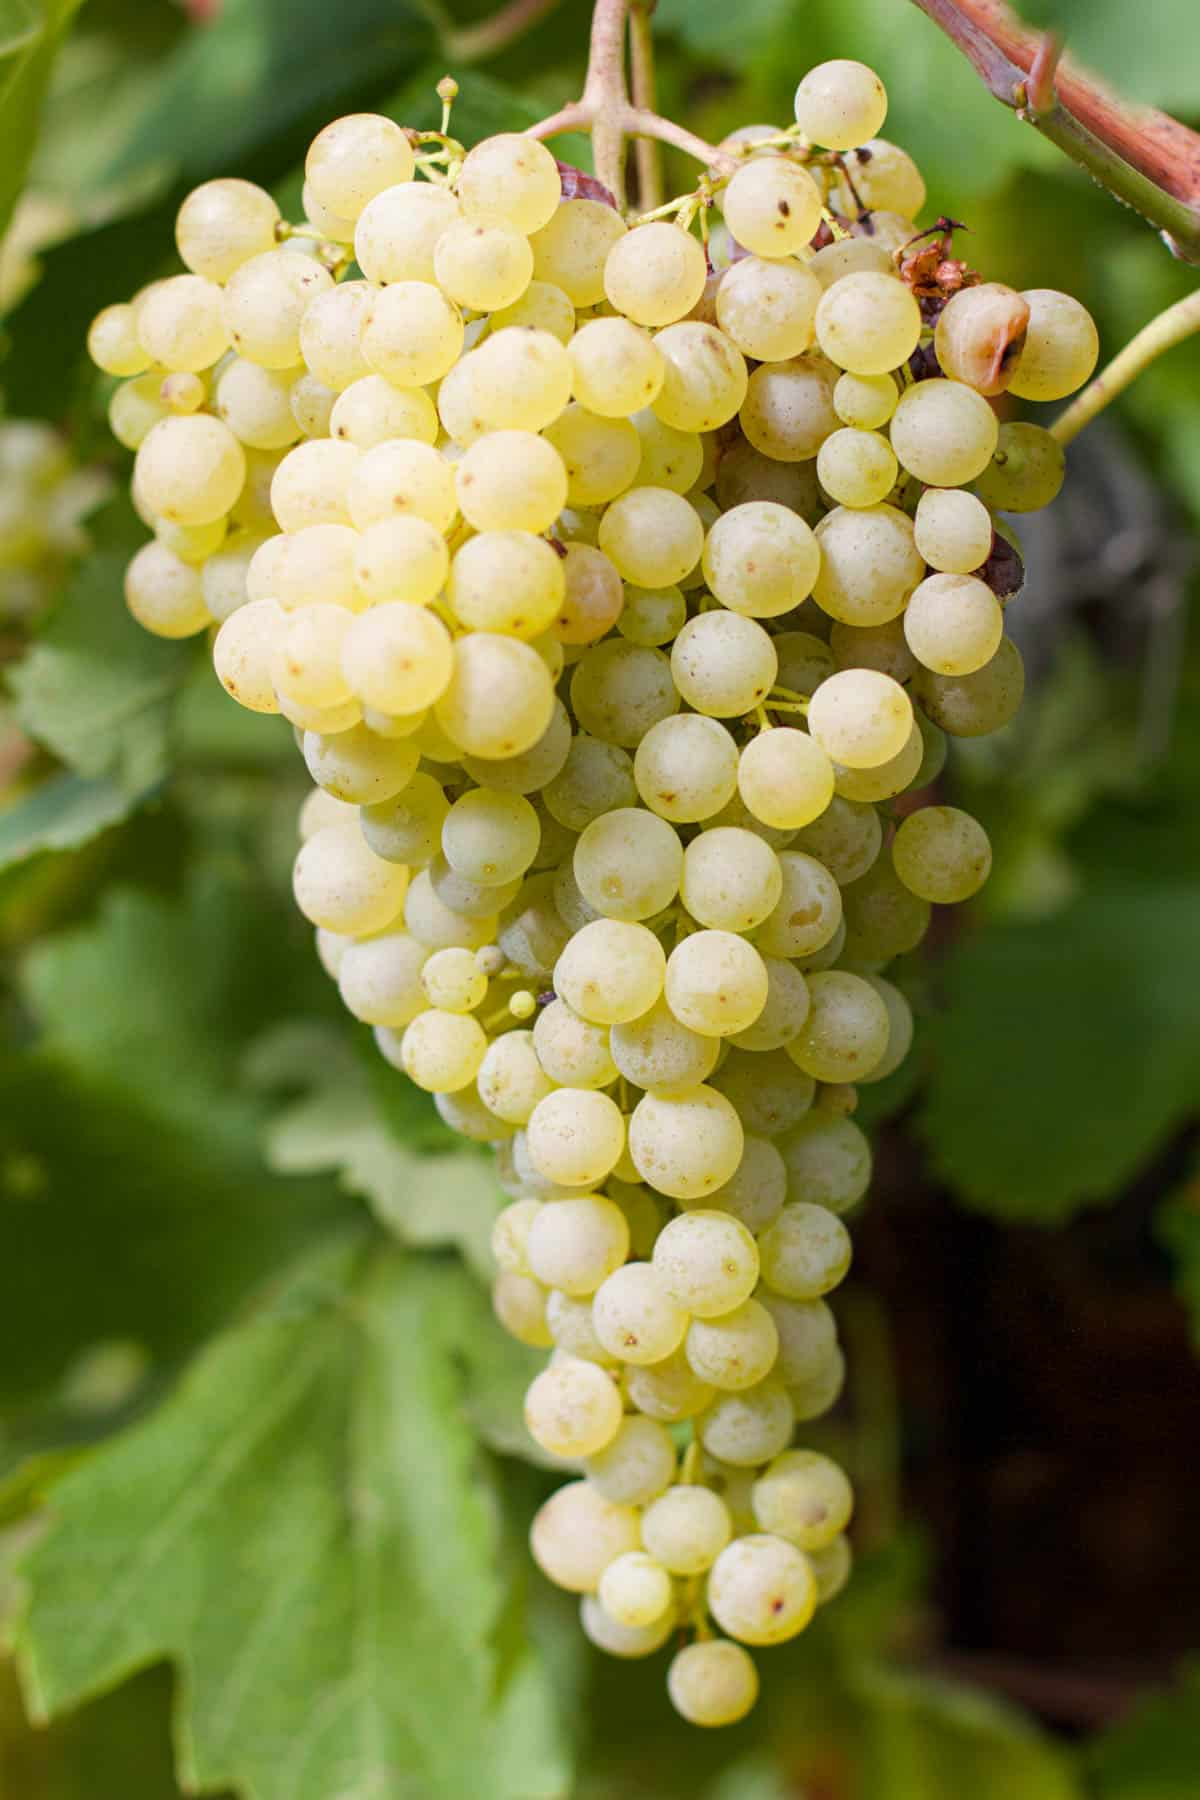 White Wine Grapes